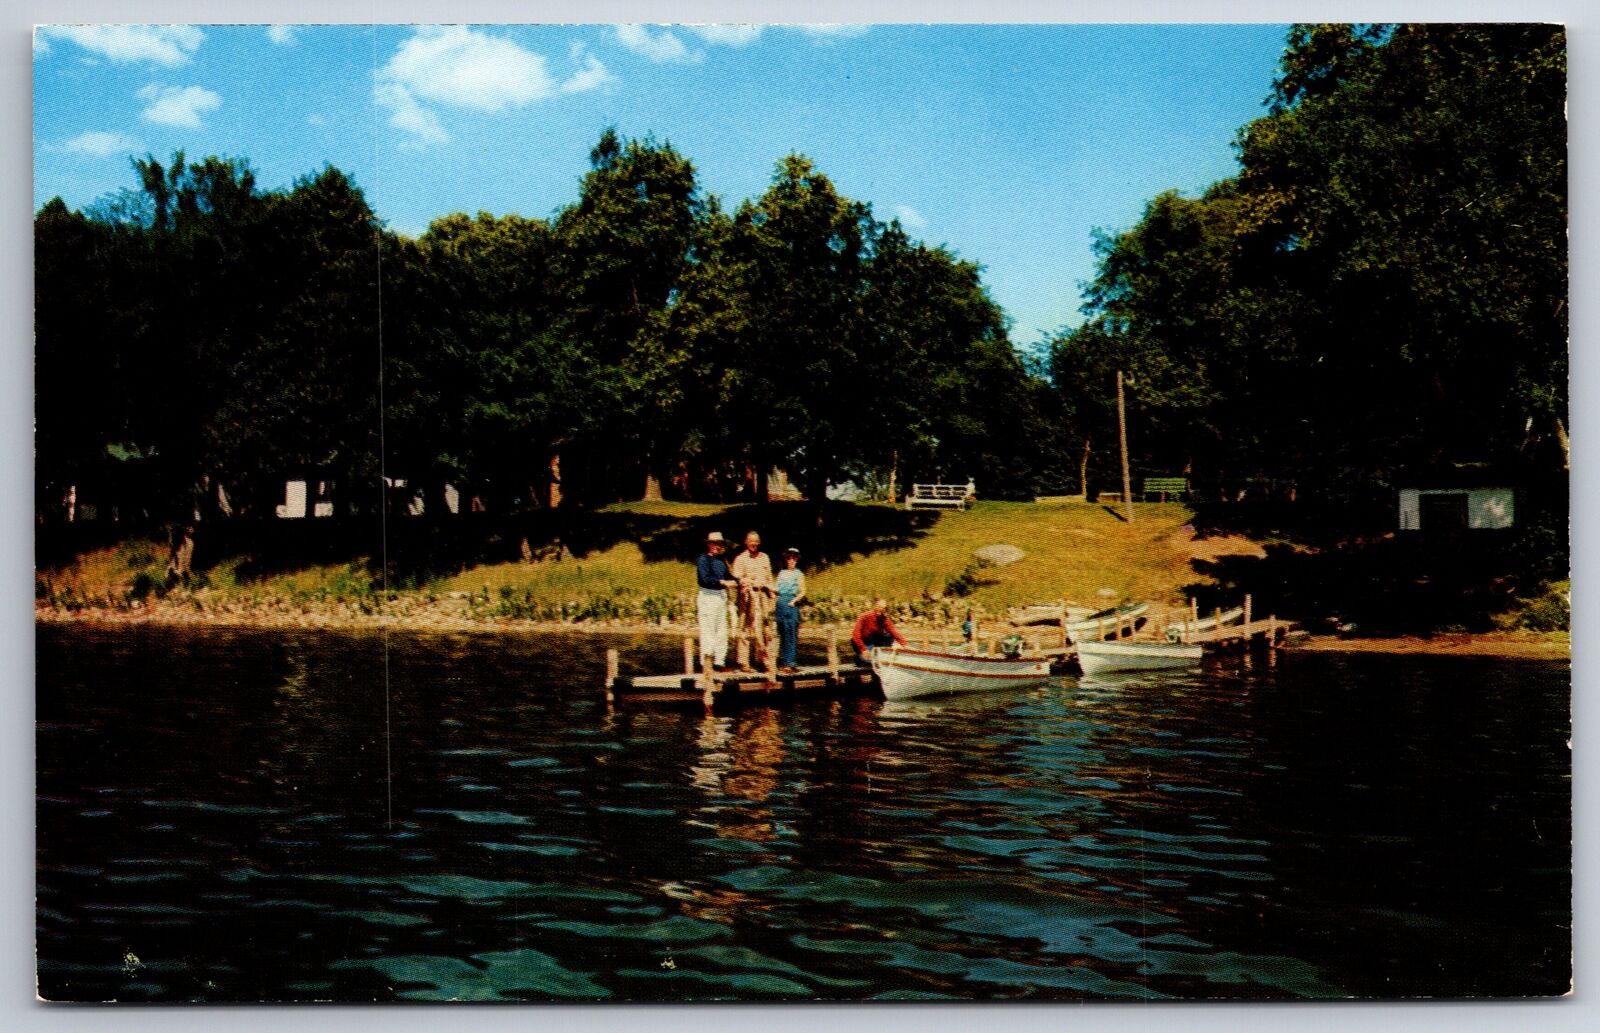 Lake Miltona Minnesota~Evergreen Inn Cabins~Family Fishing on Dock @ Resort~1967